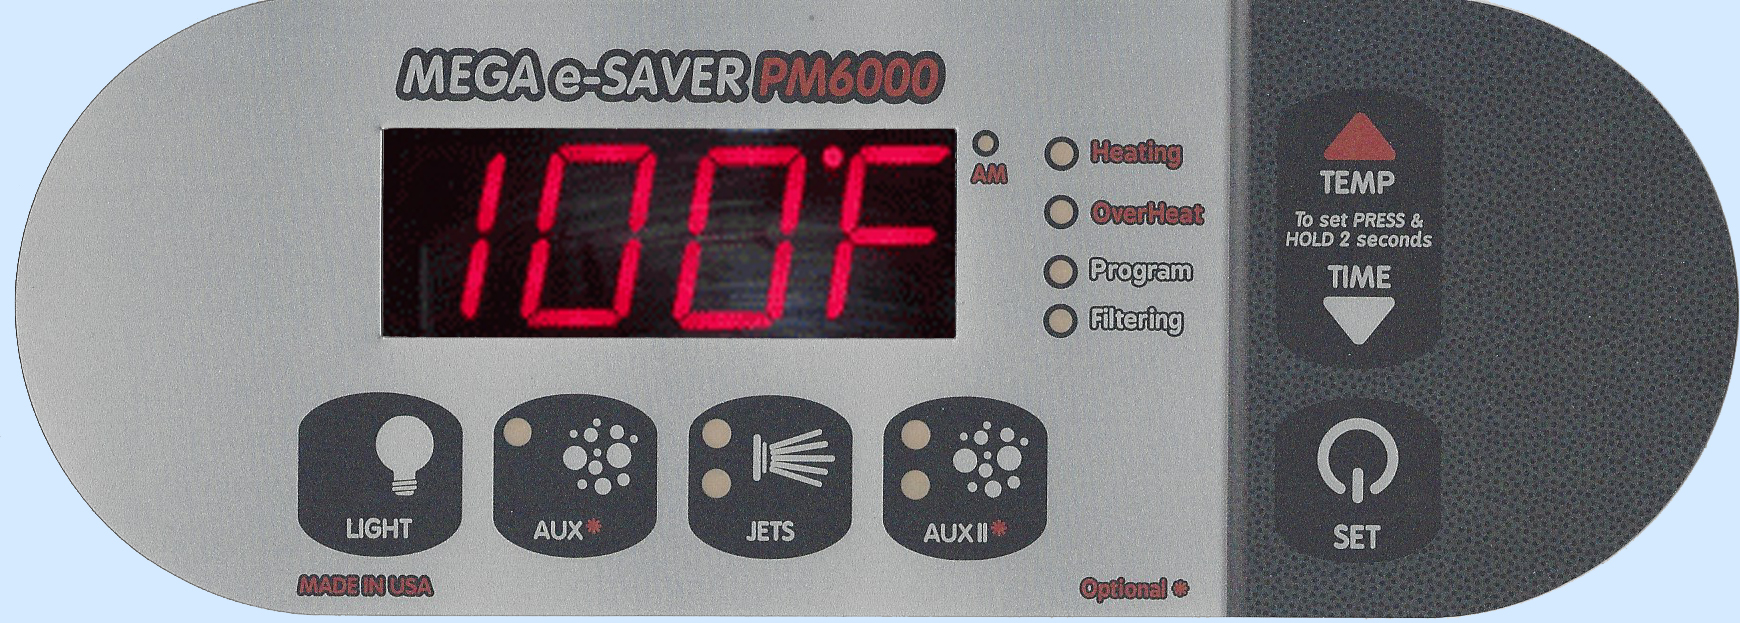 PM6000 Digital Spa Side Control